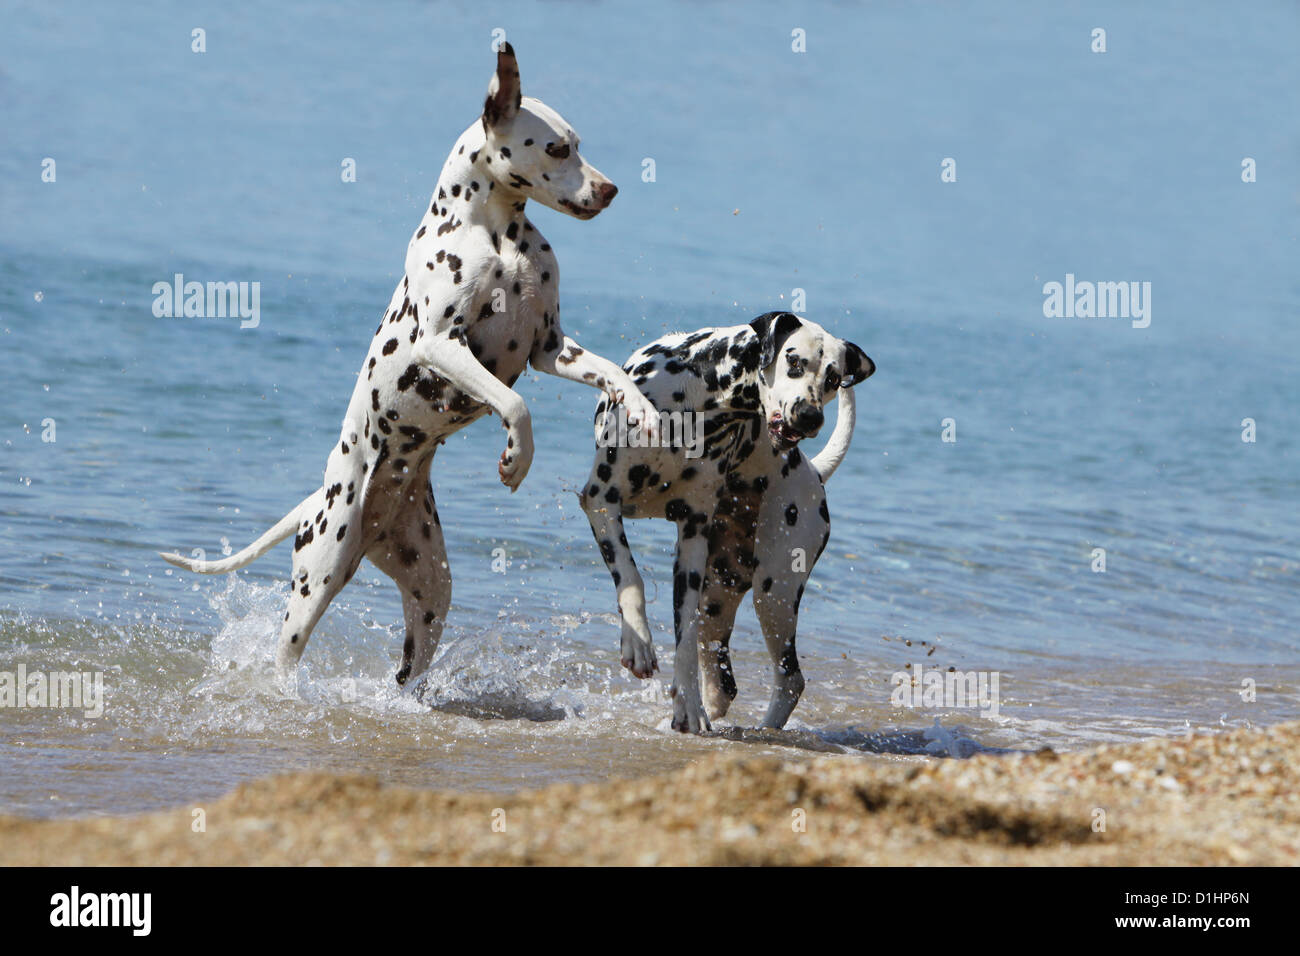 Dalmatien Dalmatiner / / Dalmatien deux adultes jouant dans la mer Banque D'Images